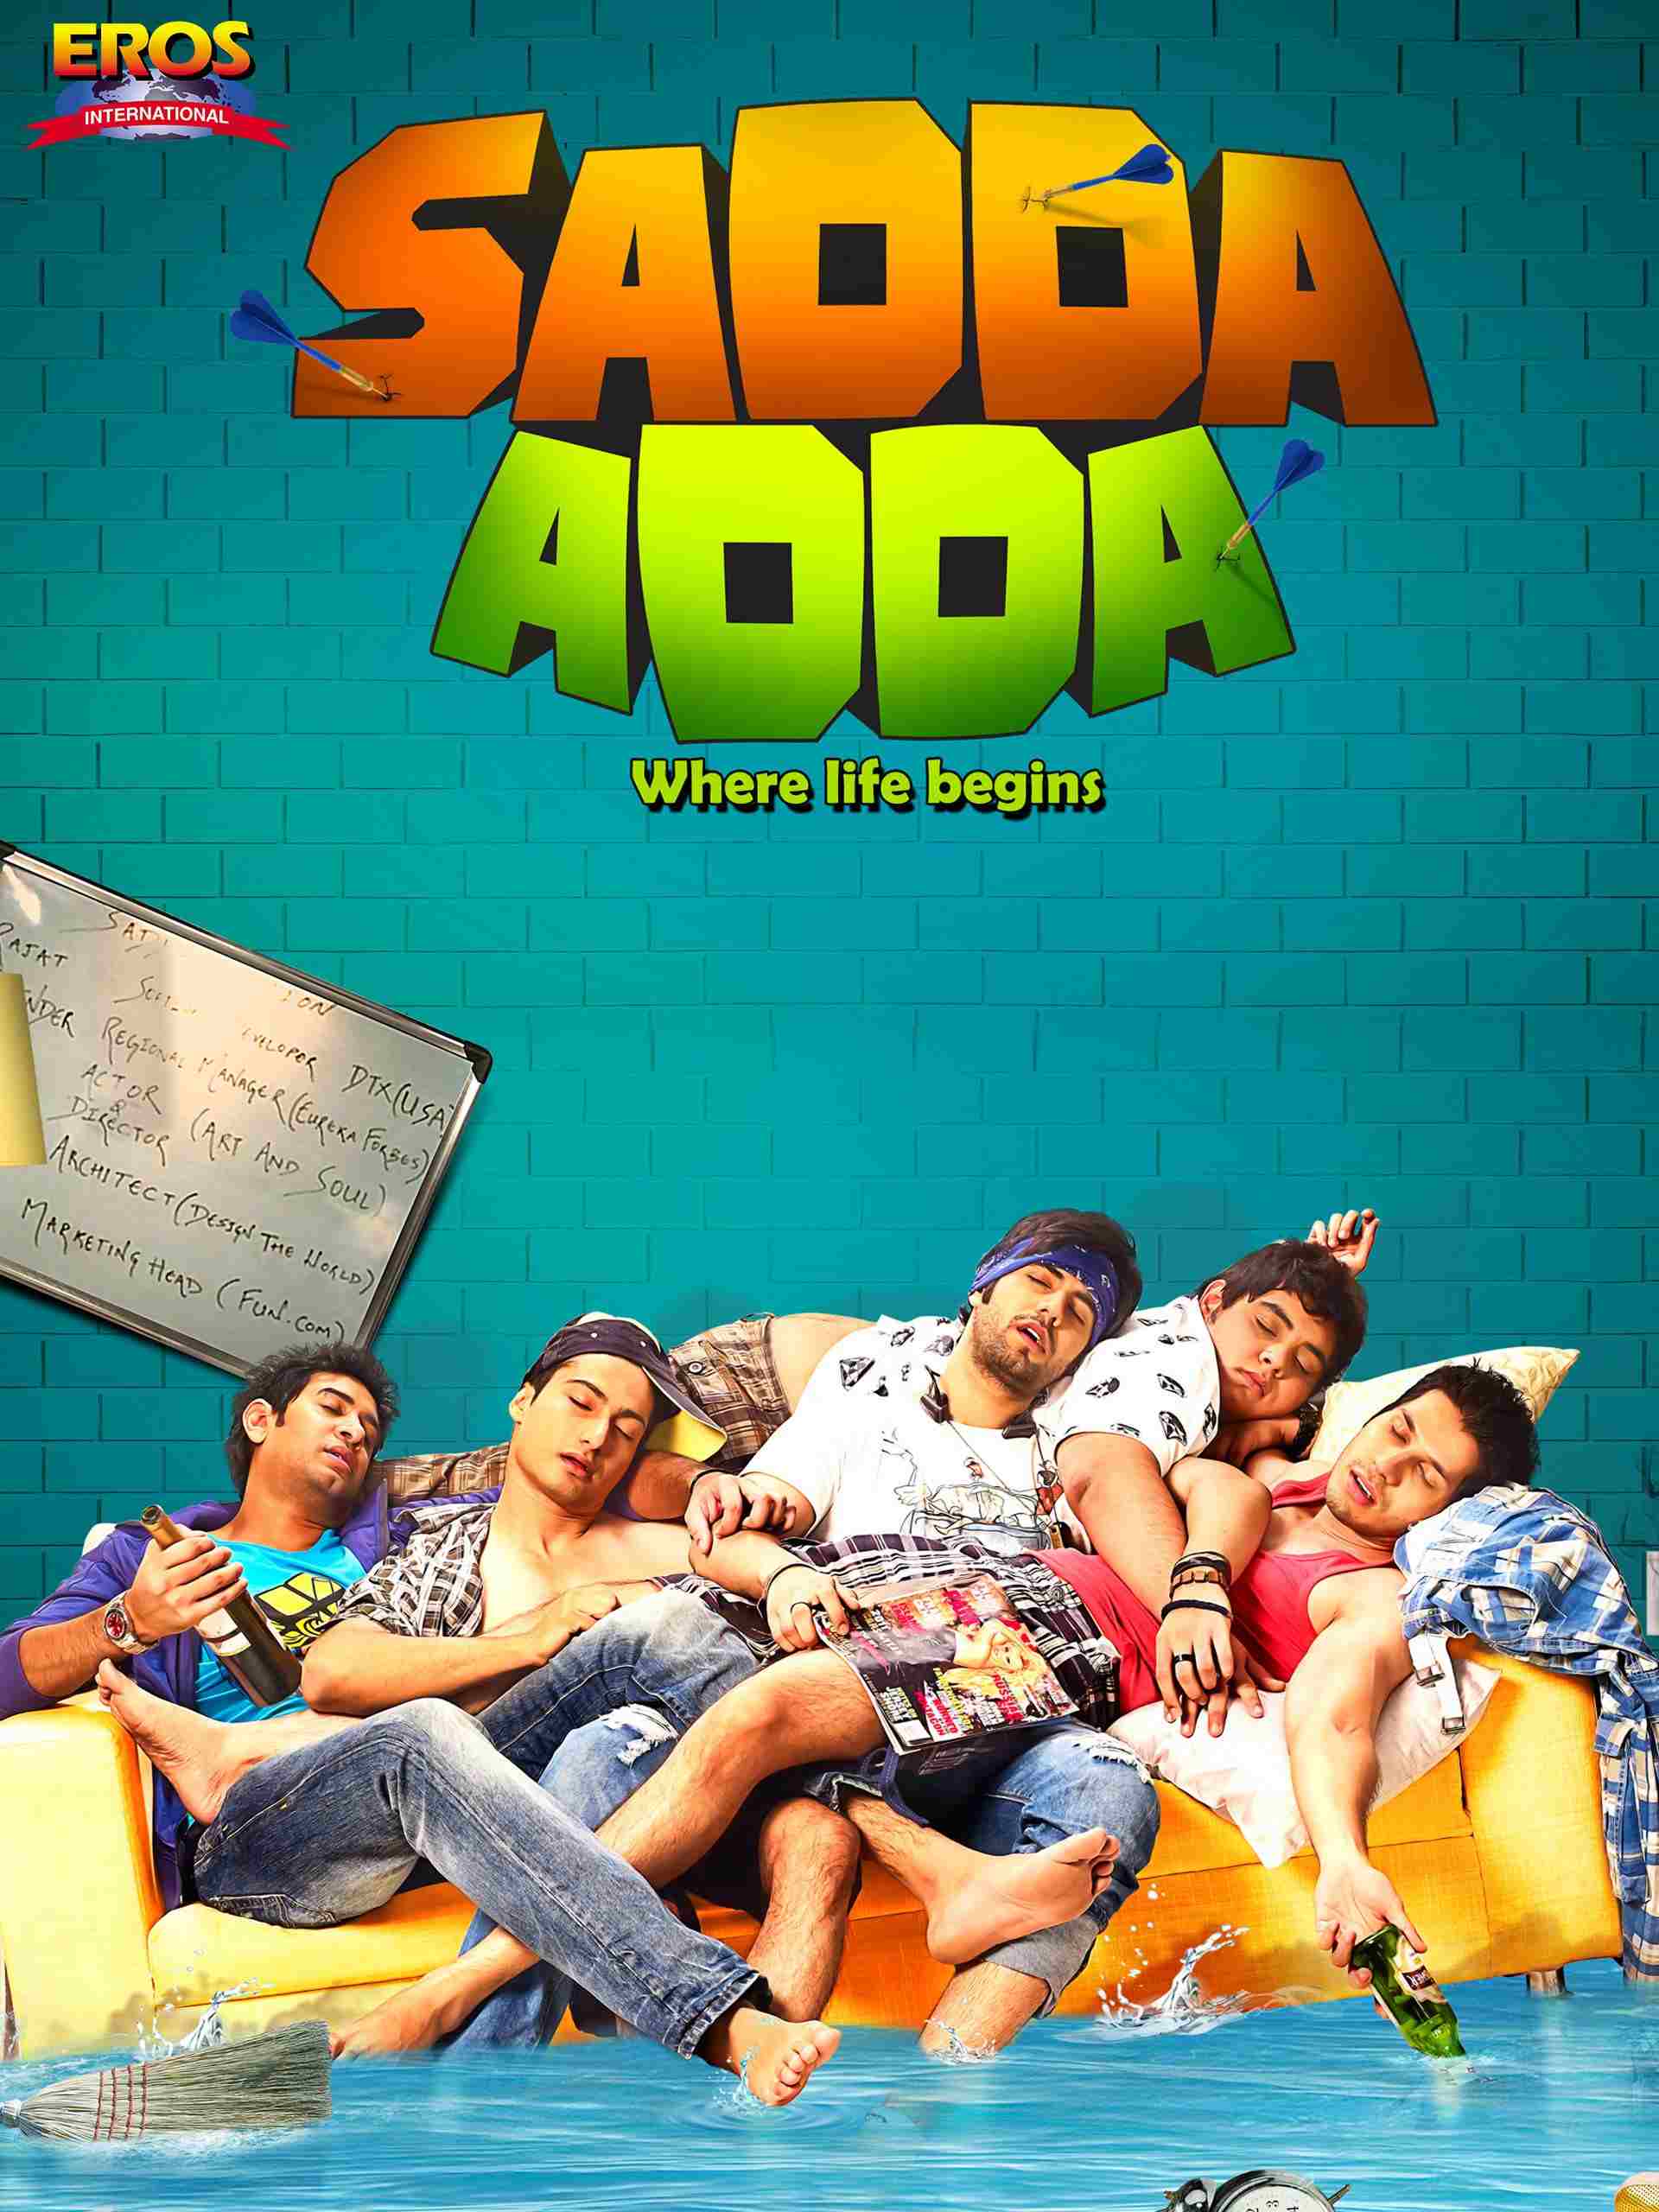 Sadda Adda is one of the offbeat hindi movies